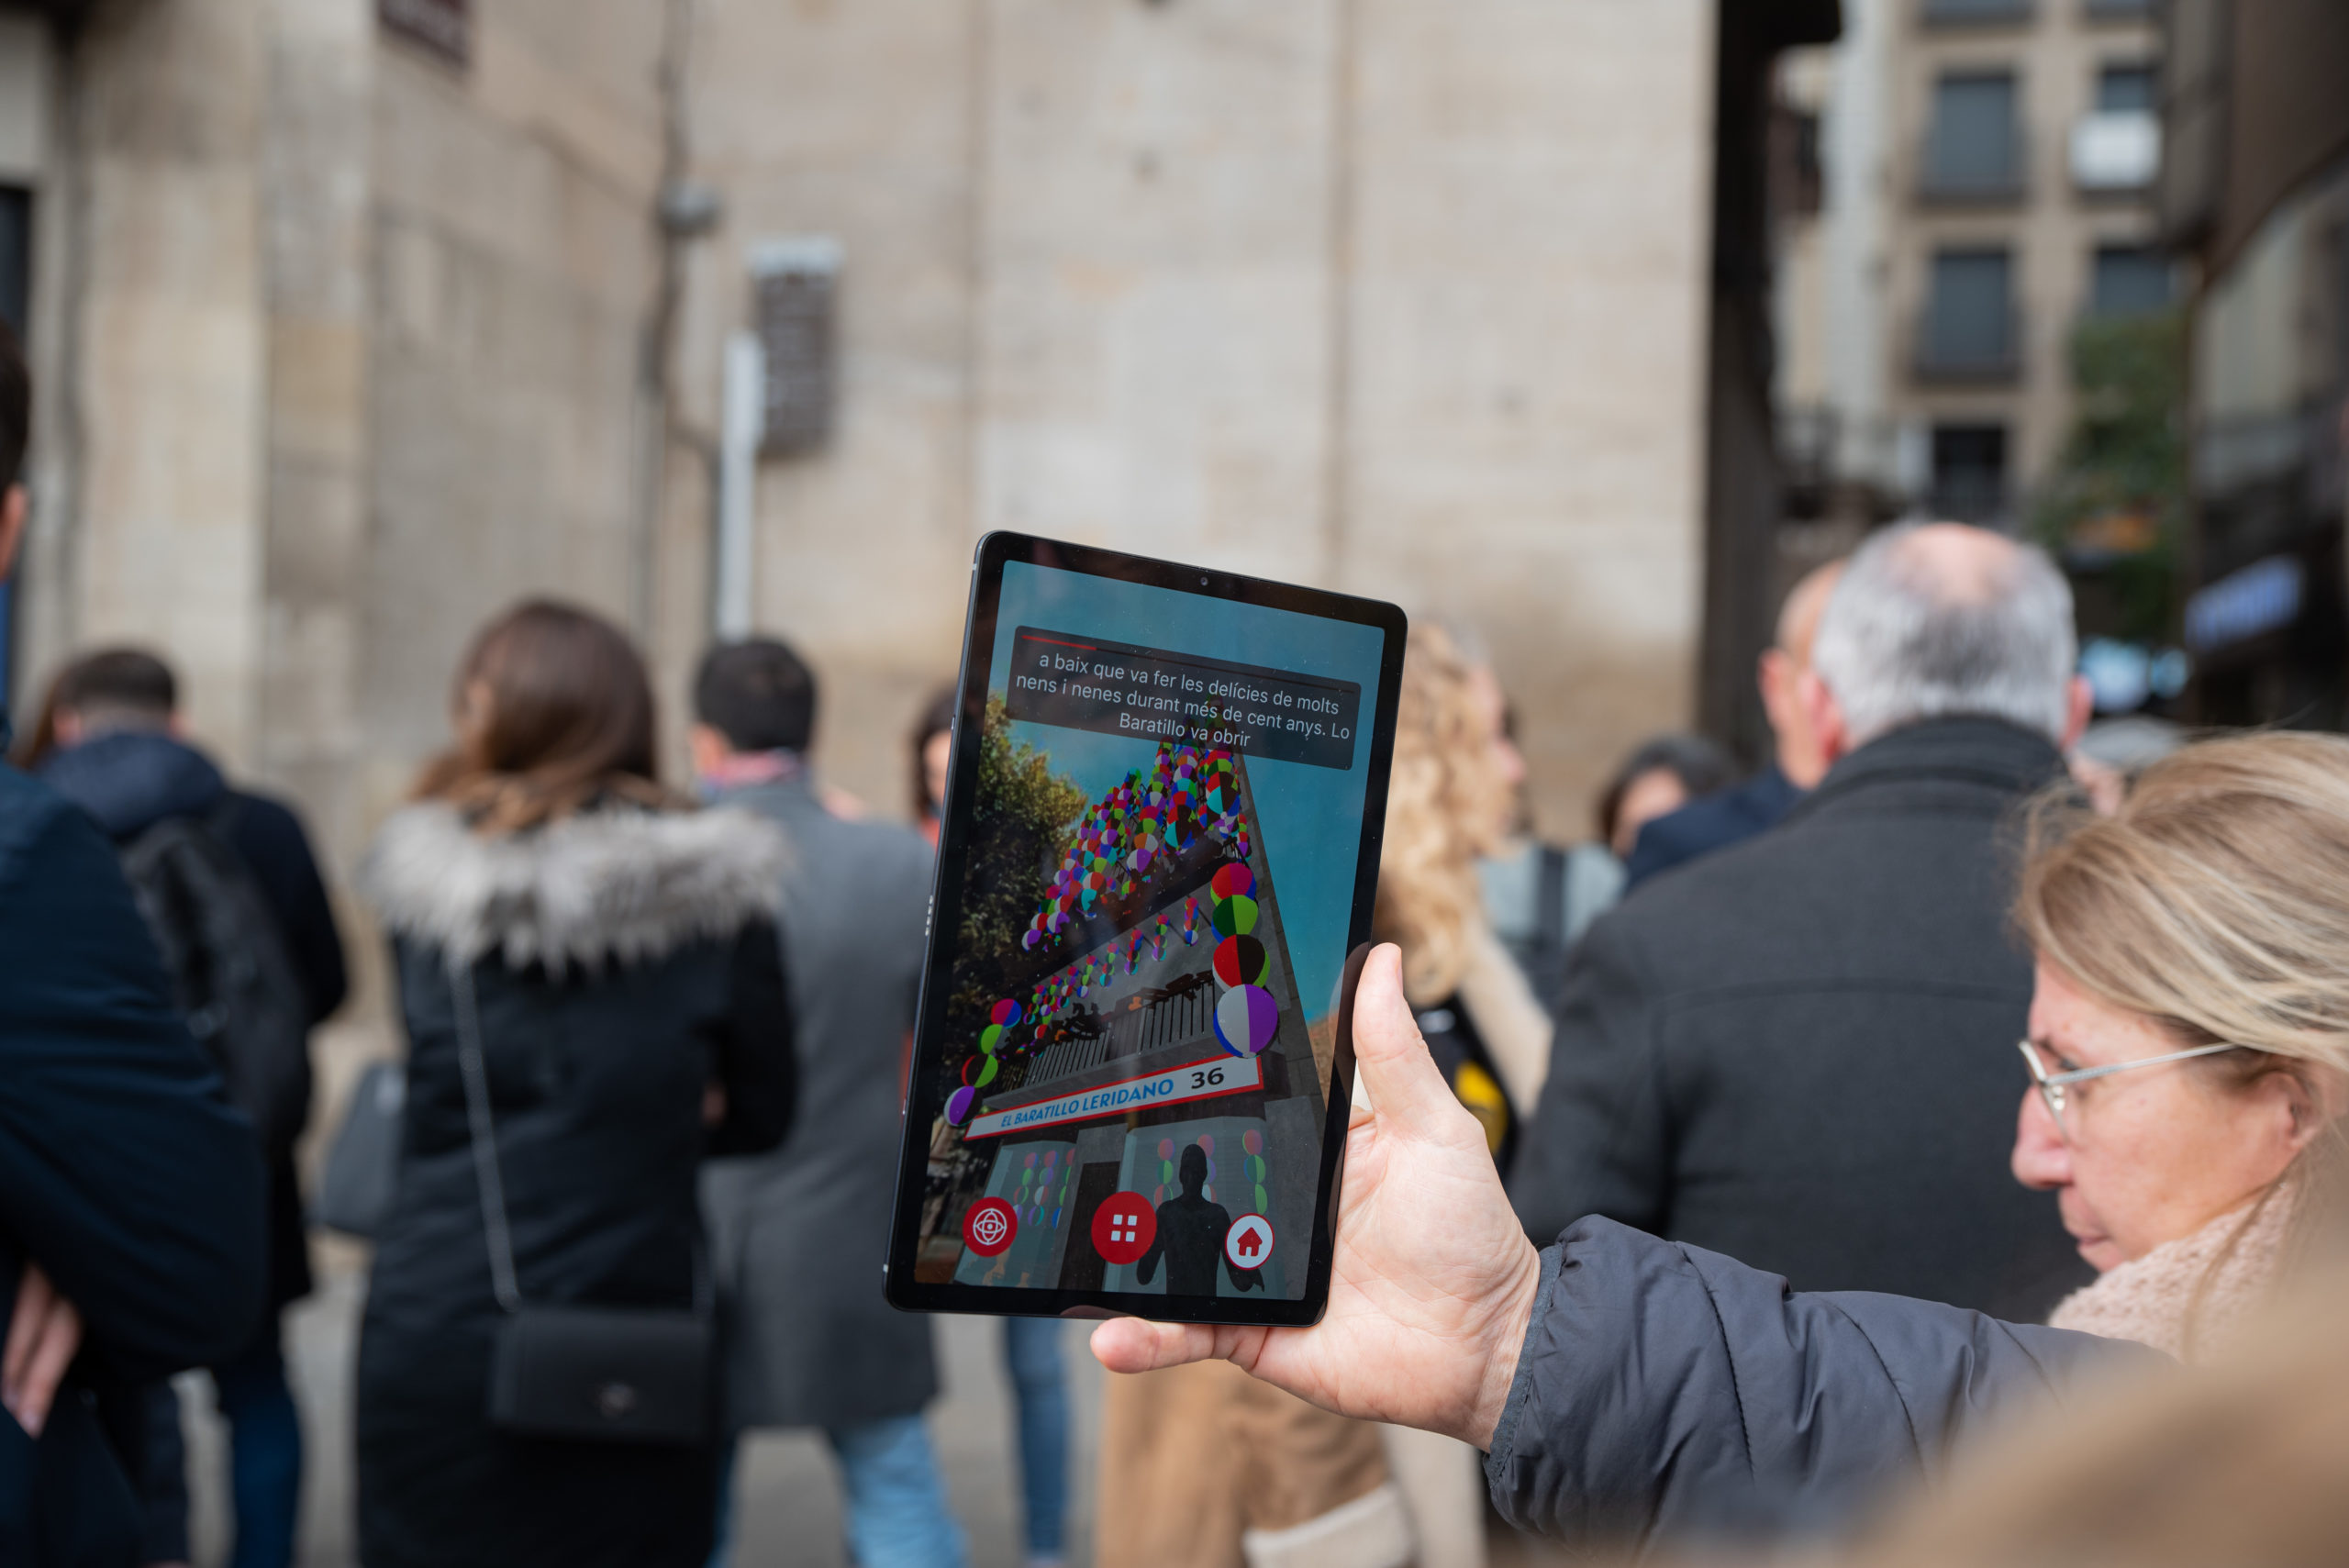 Els comerços de Lleida ofereixen aquest Nadal una experiència immersiva amb realitat augmentada gràcies a la tecnologia 5G